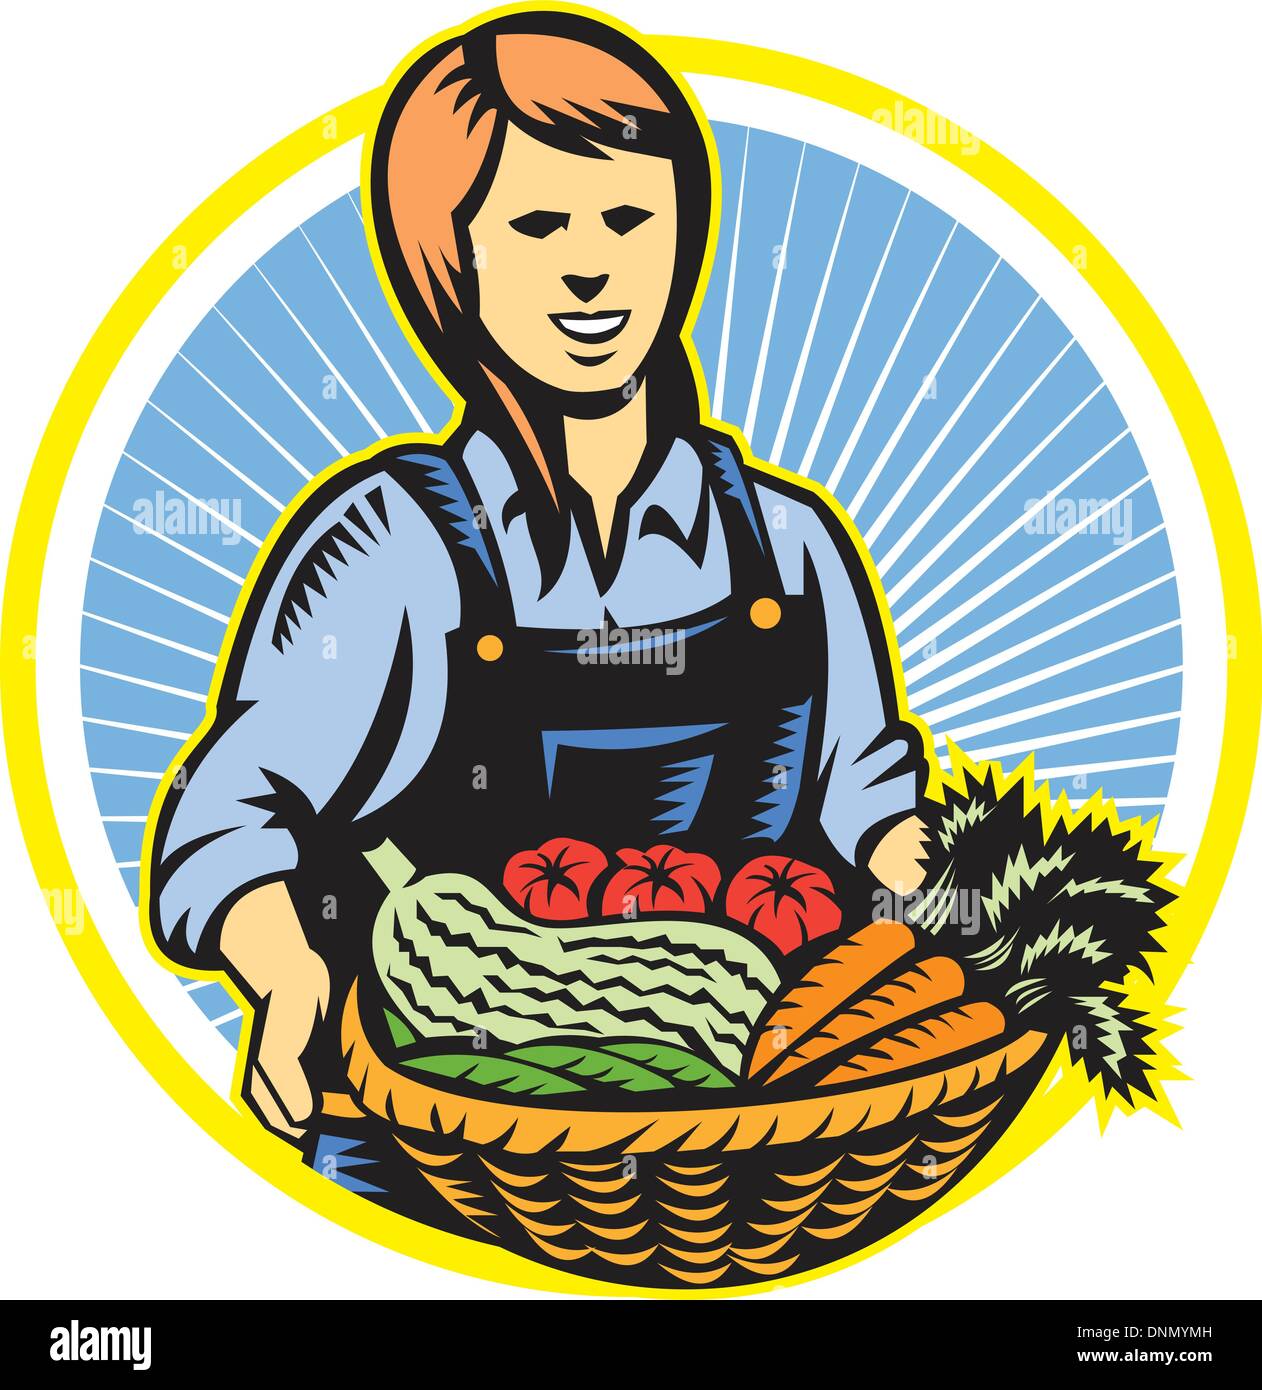 Illustration de la femme agricultrice biologique avec panier de récolte des cultures produisent des fruits légumes face à l'avant fixé à l'intérieur du cercle fait Illustration de Vecteur